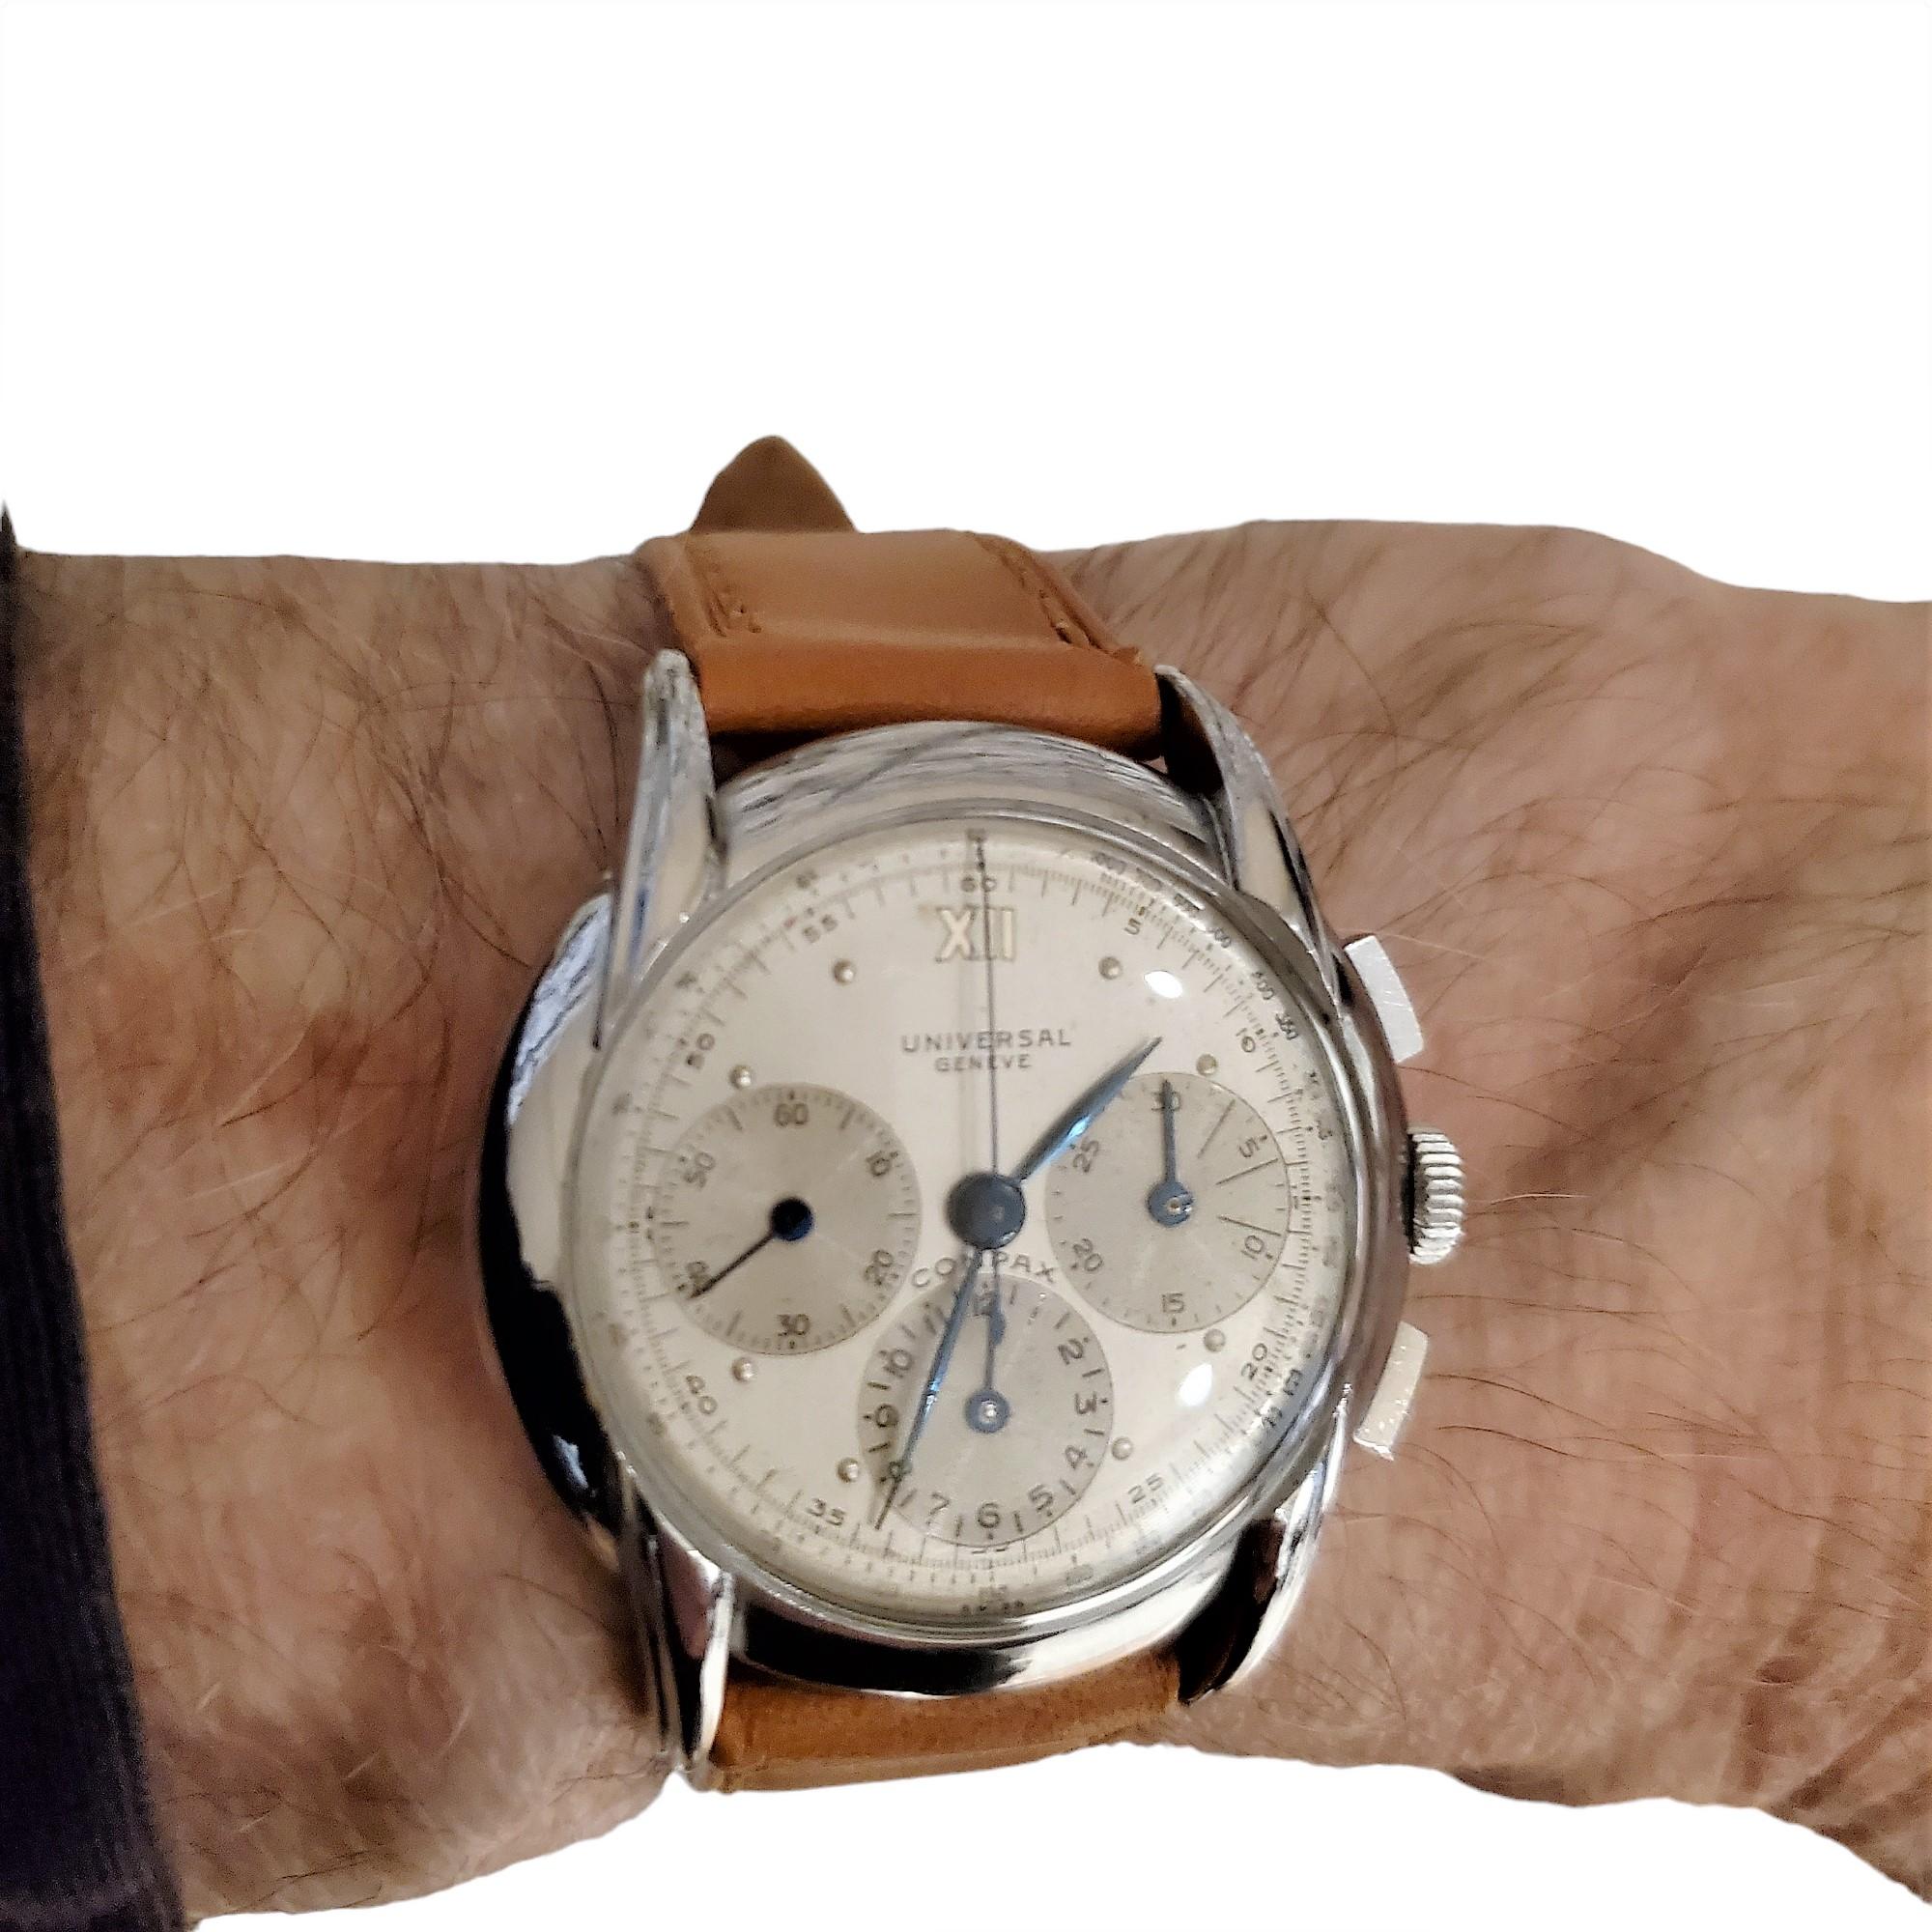 Universal Geneve Compax chronographe Ref. # 22270 ;  en acier inoxydable.  La montre mesure 36 mm et possède de grandes cornes cannelées, un cadran argenté bicolore avec un cadran de 12 heures, un cadran de 30 minutes et une trotteuse.  Condit : 